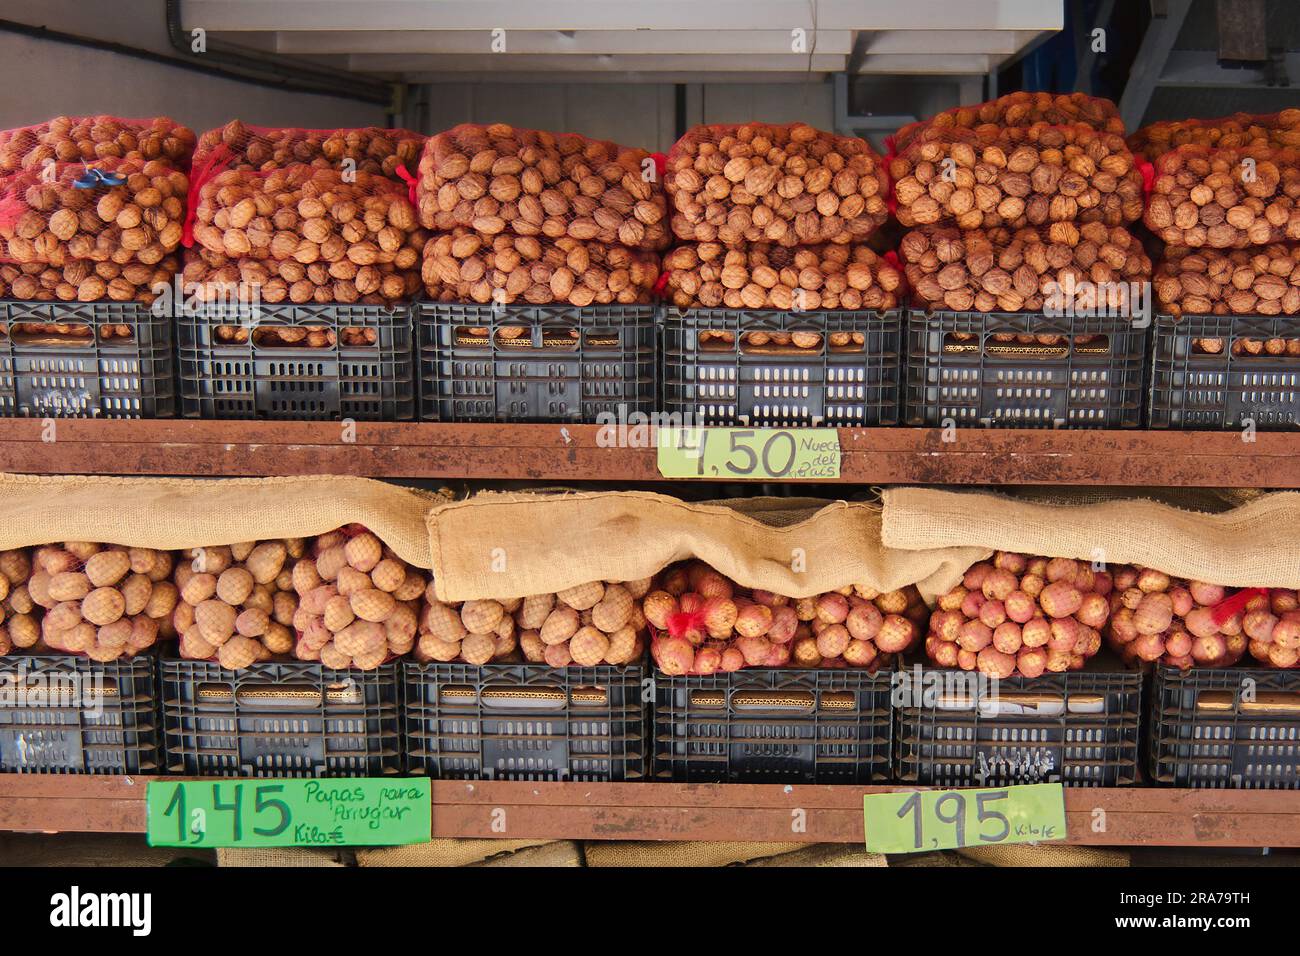 Street stall vendant des pommes de terre à faire des rides à Tenerife et sur la tablette supérieure de nombreux mayas de noix de pays dans des boîtes en plastique juste comme les pommes de terre, avec t Banque D'Images